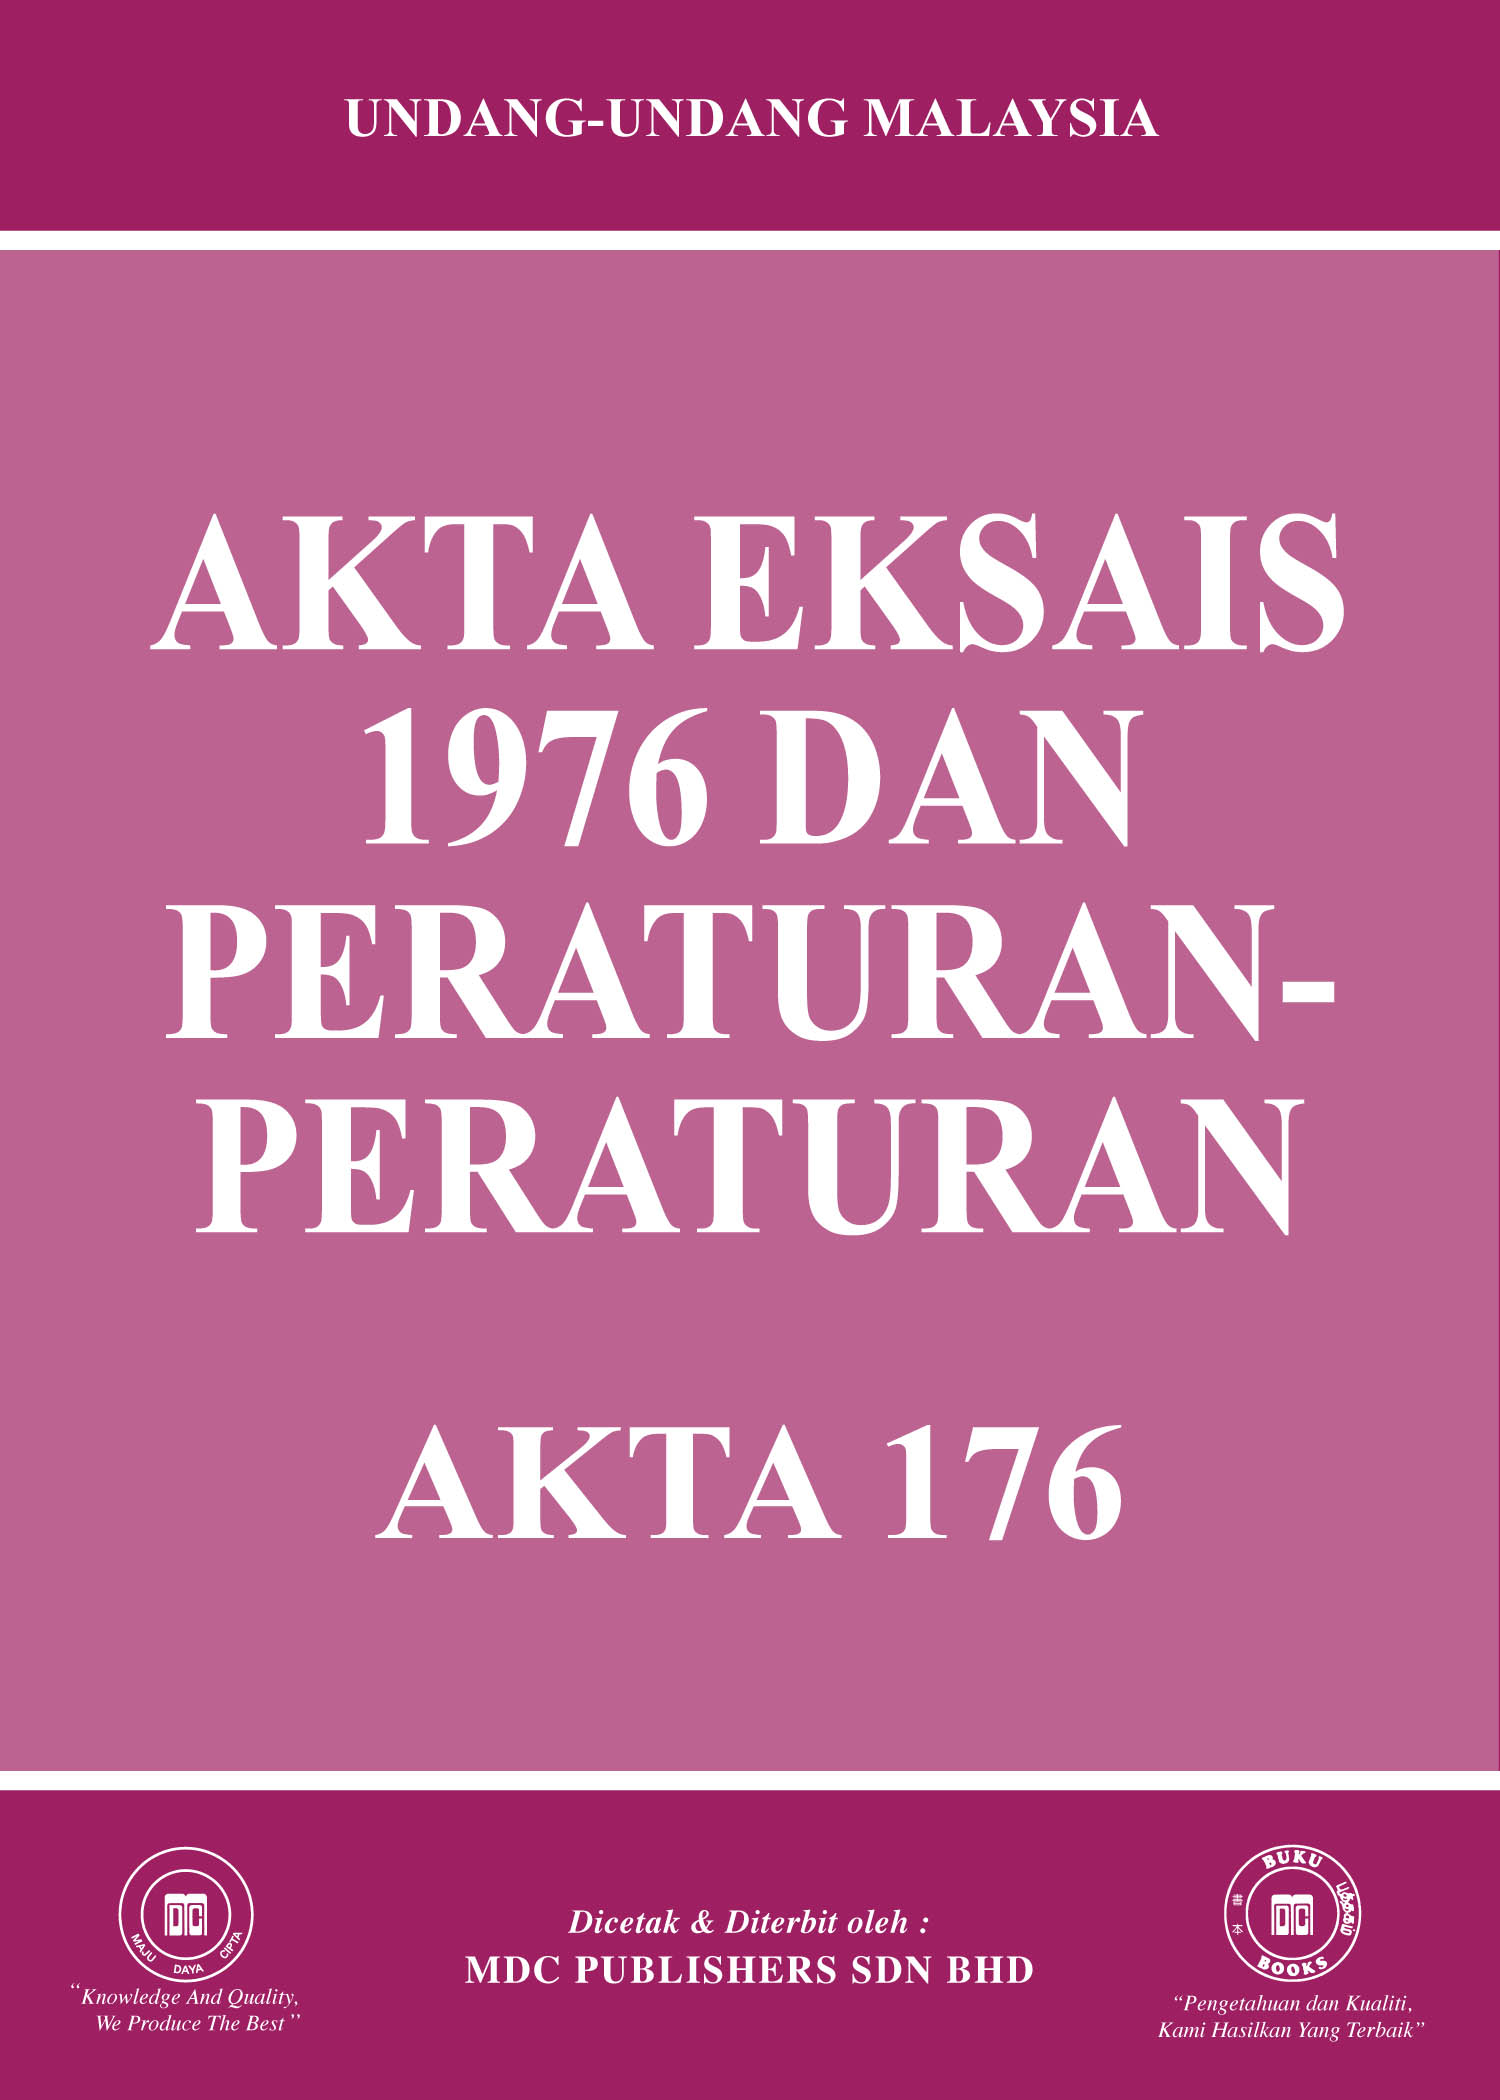 Laws Of Malaysia Akta Eksais 1976 Dan Peraturan Peraturan